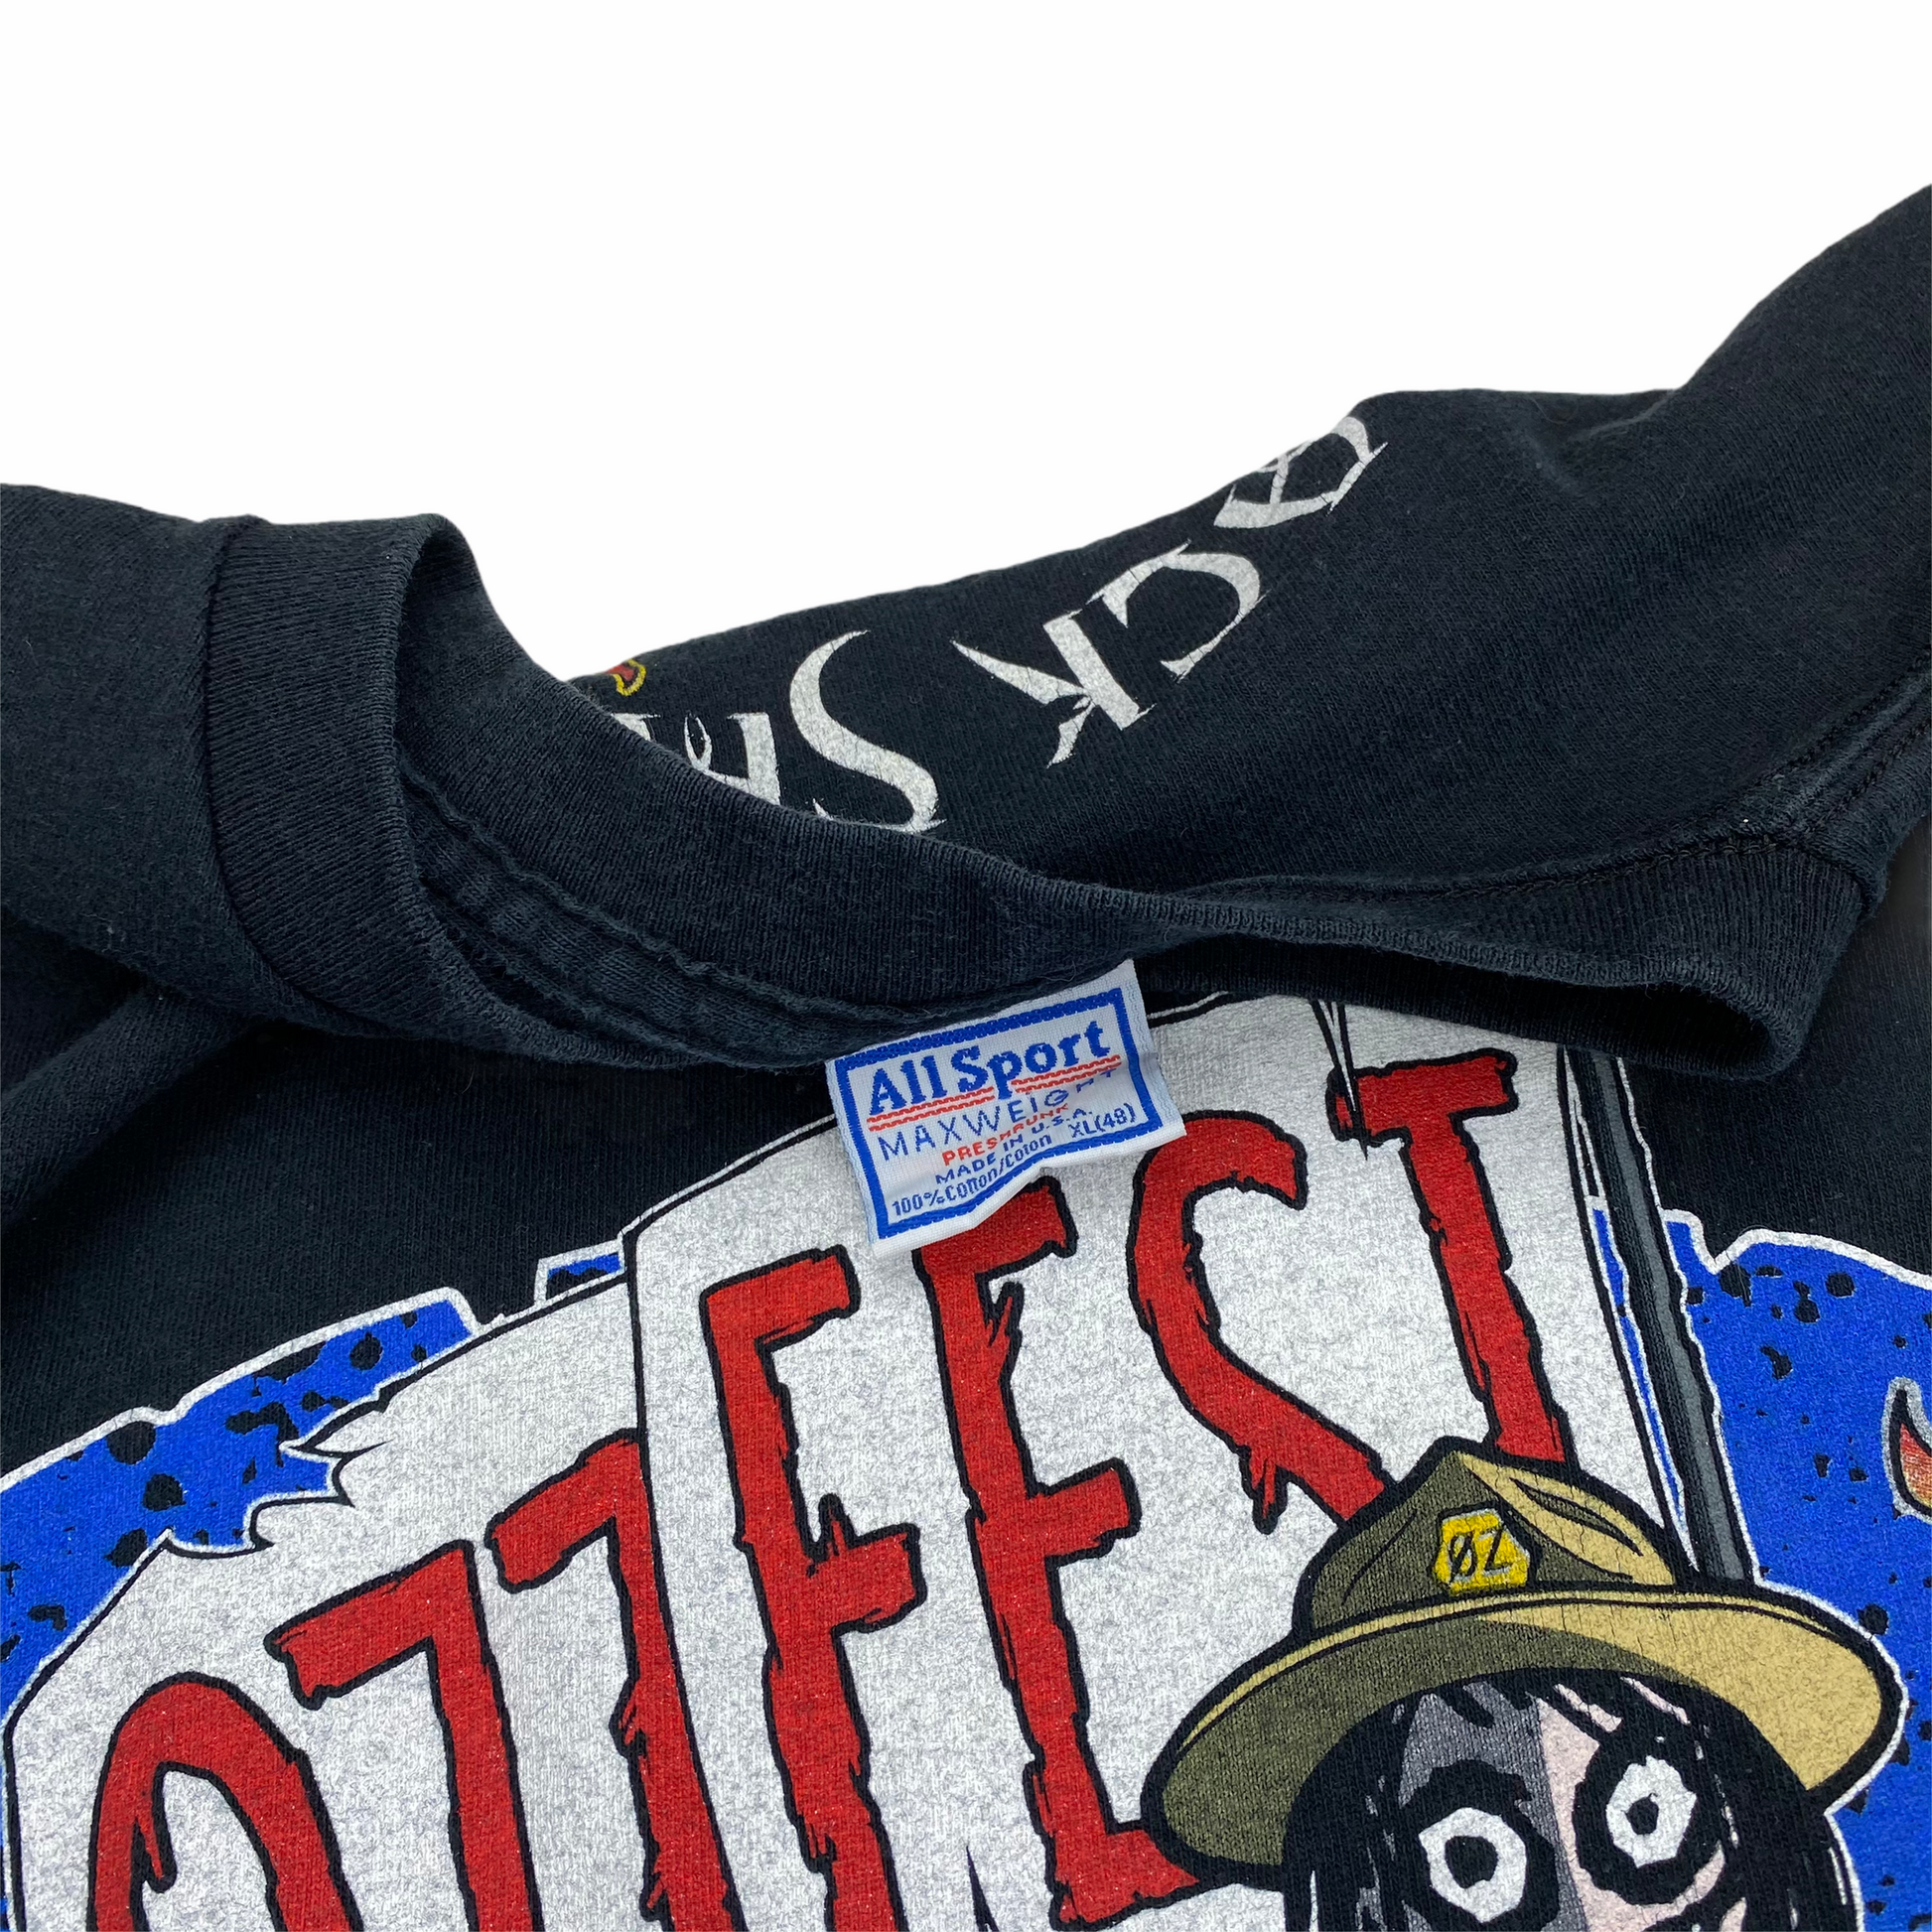 99 The Ozzfest Vintage T-shirt XL – Vipe Vintage